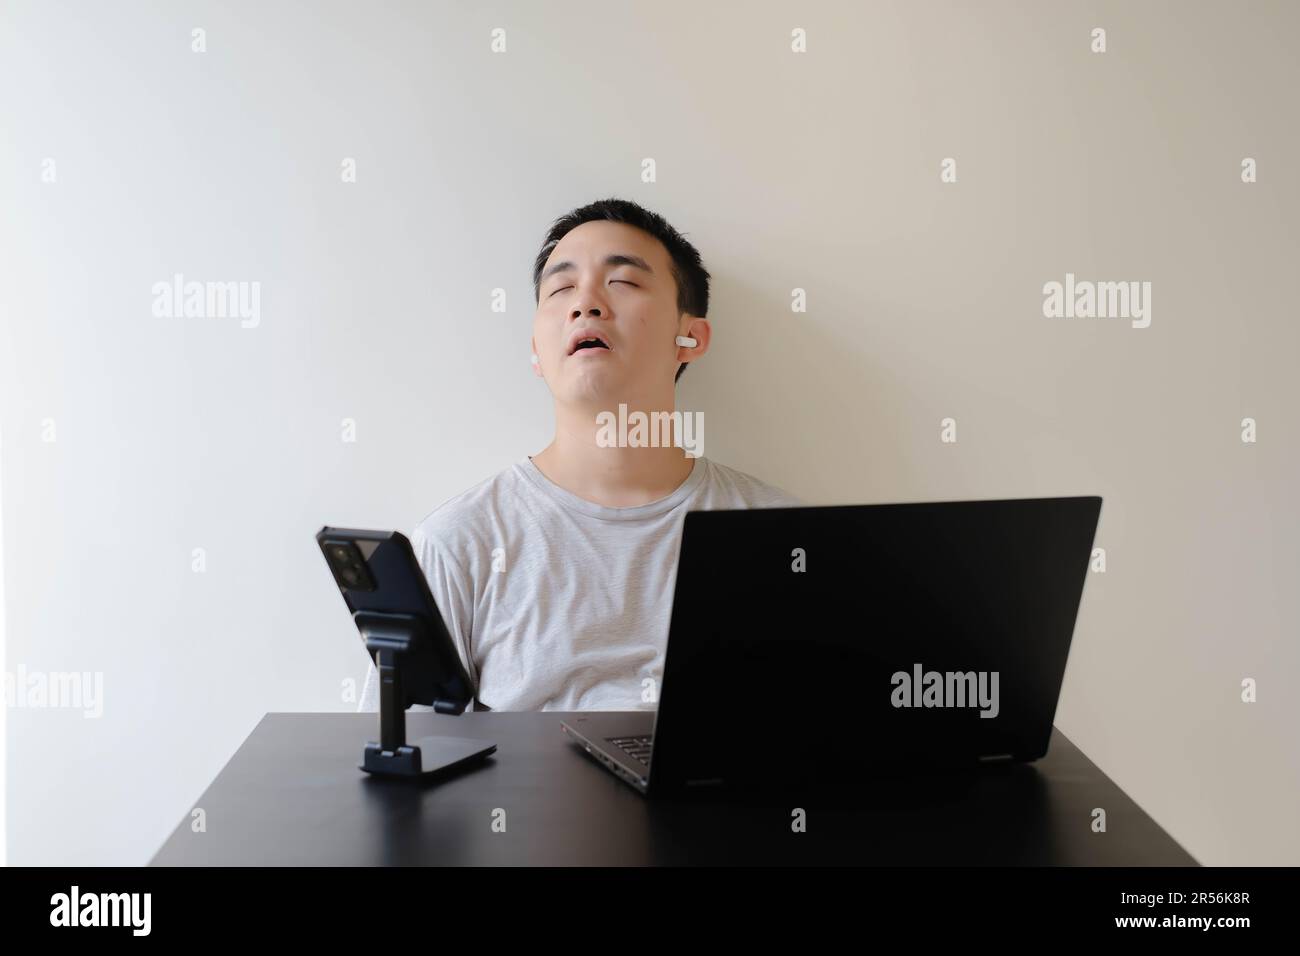 Un joven asiático que lleva una camiseta gris y un par de auriculares inalámbricos se queda dormido mientras trabaja desde casa Foto de stock